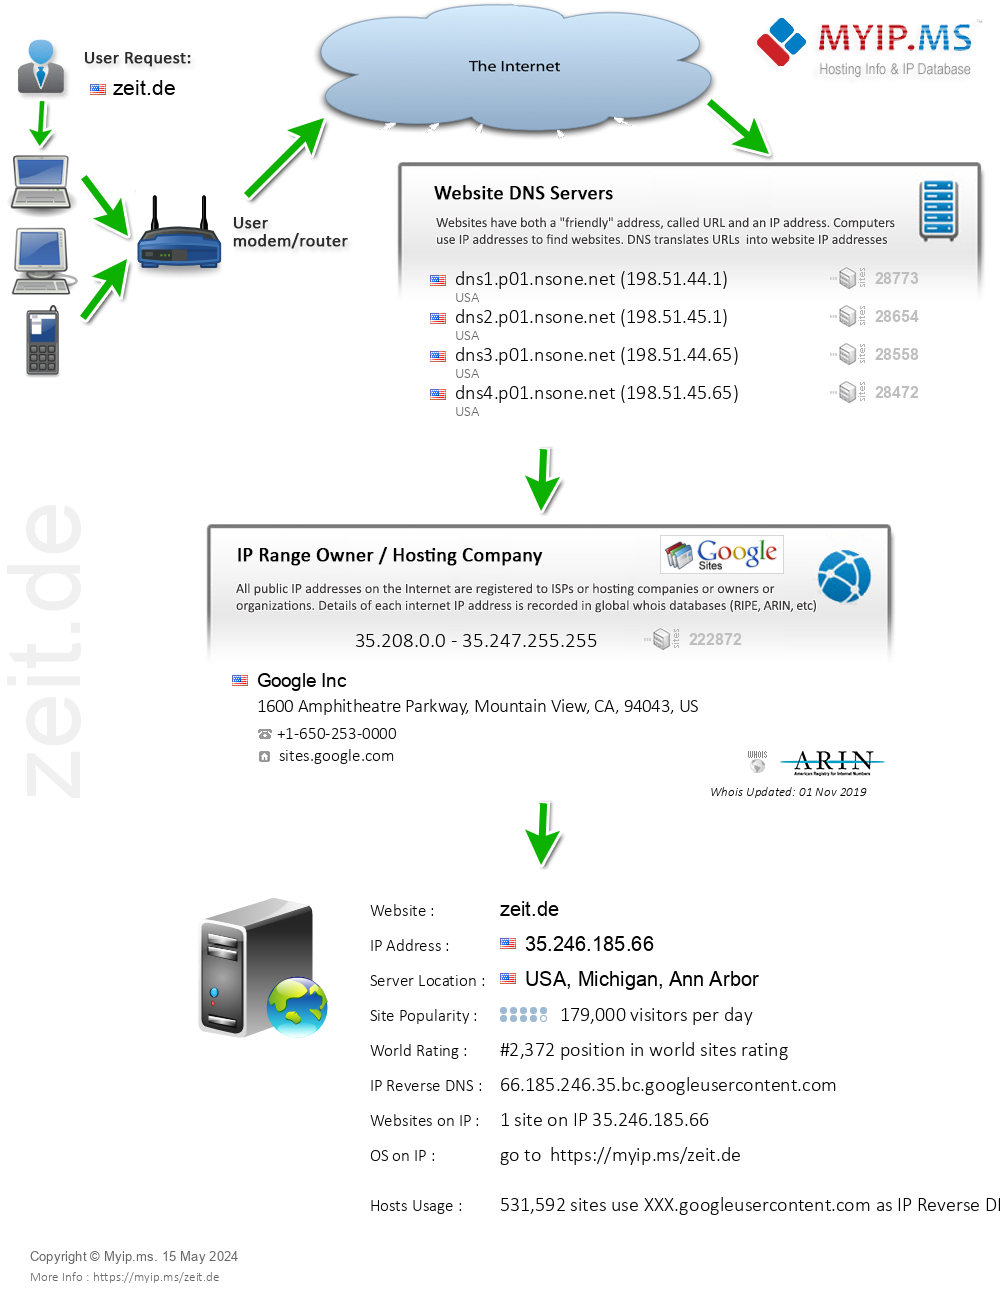 Zeit.de - Website Hosting Visual IP Diagram